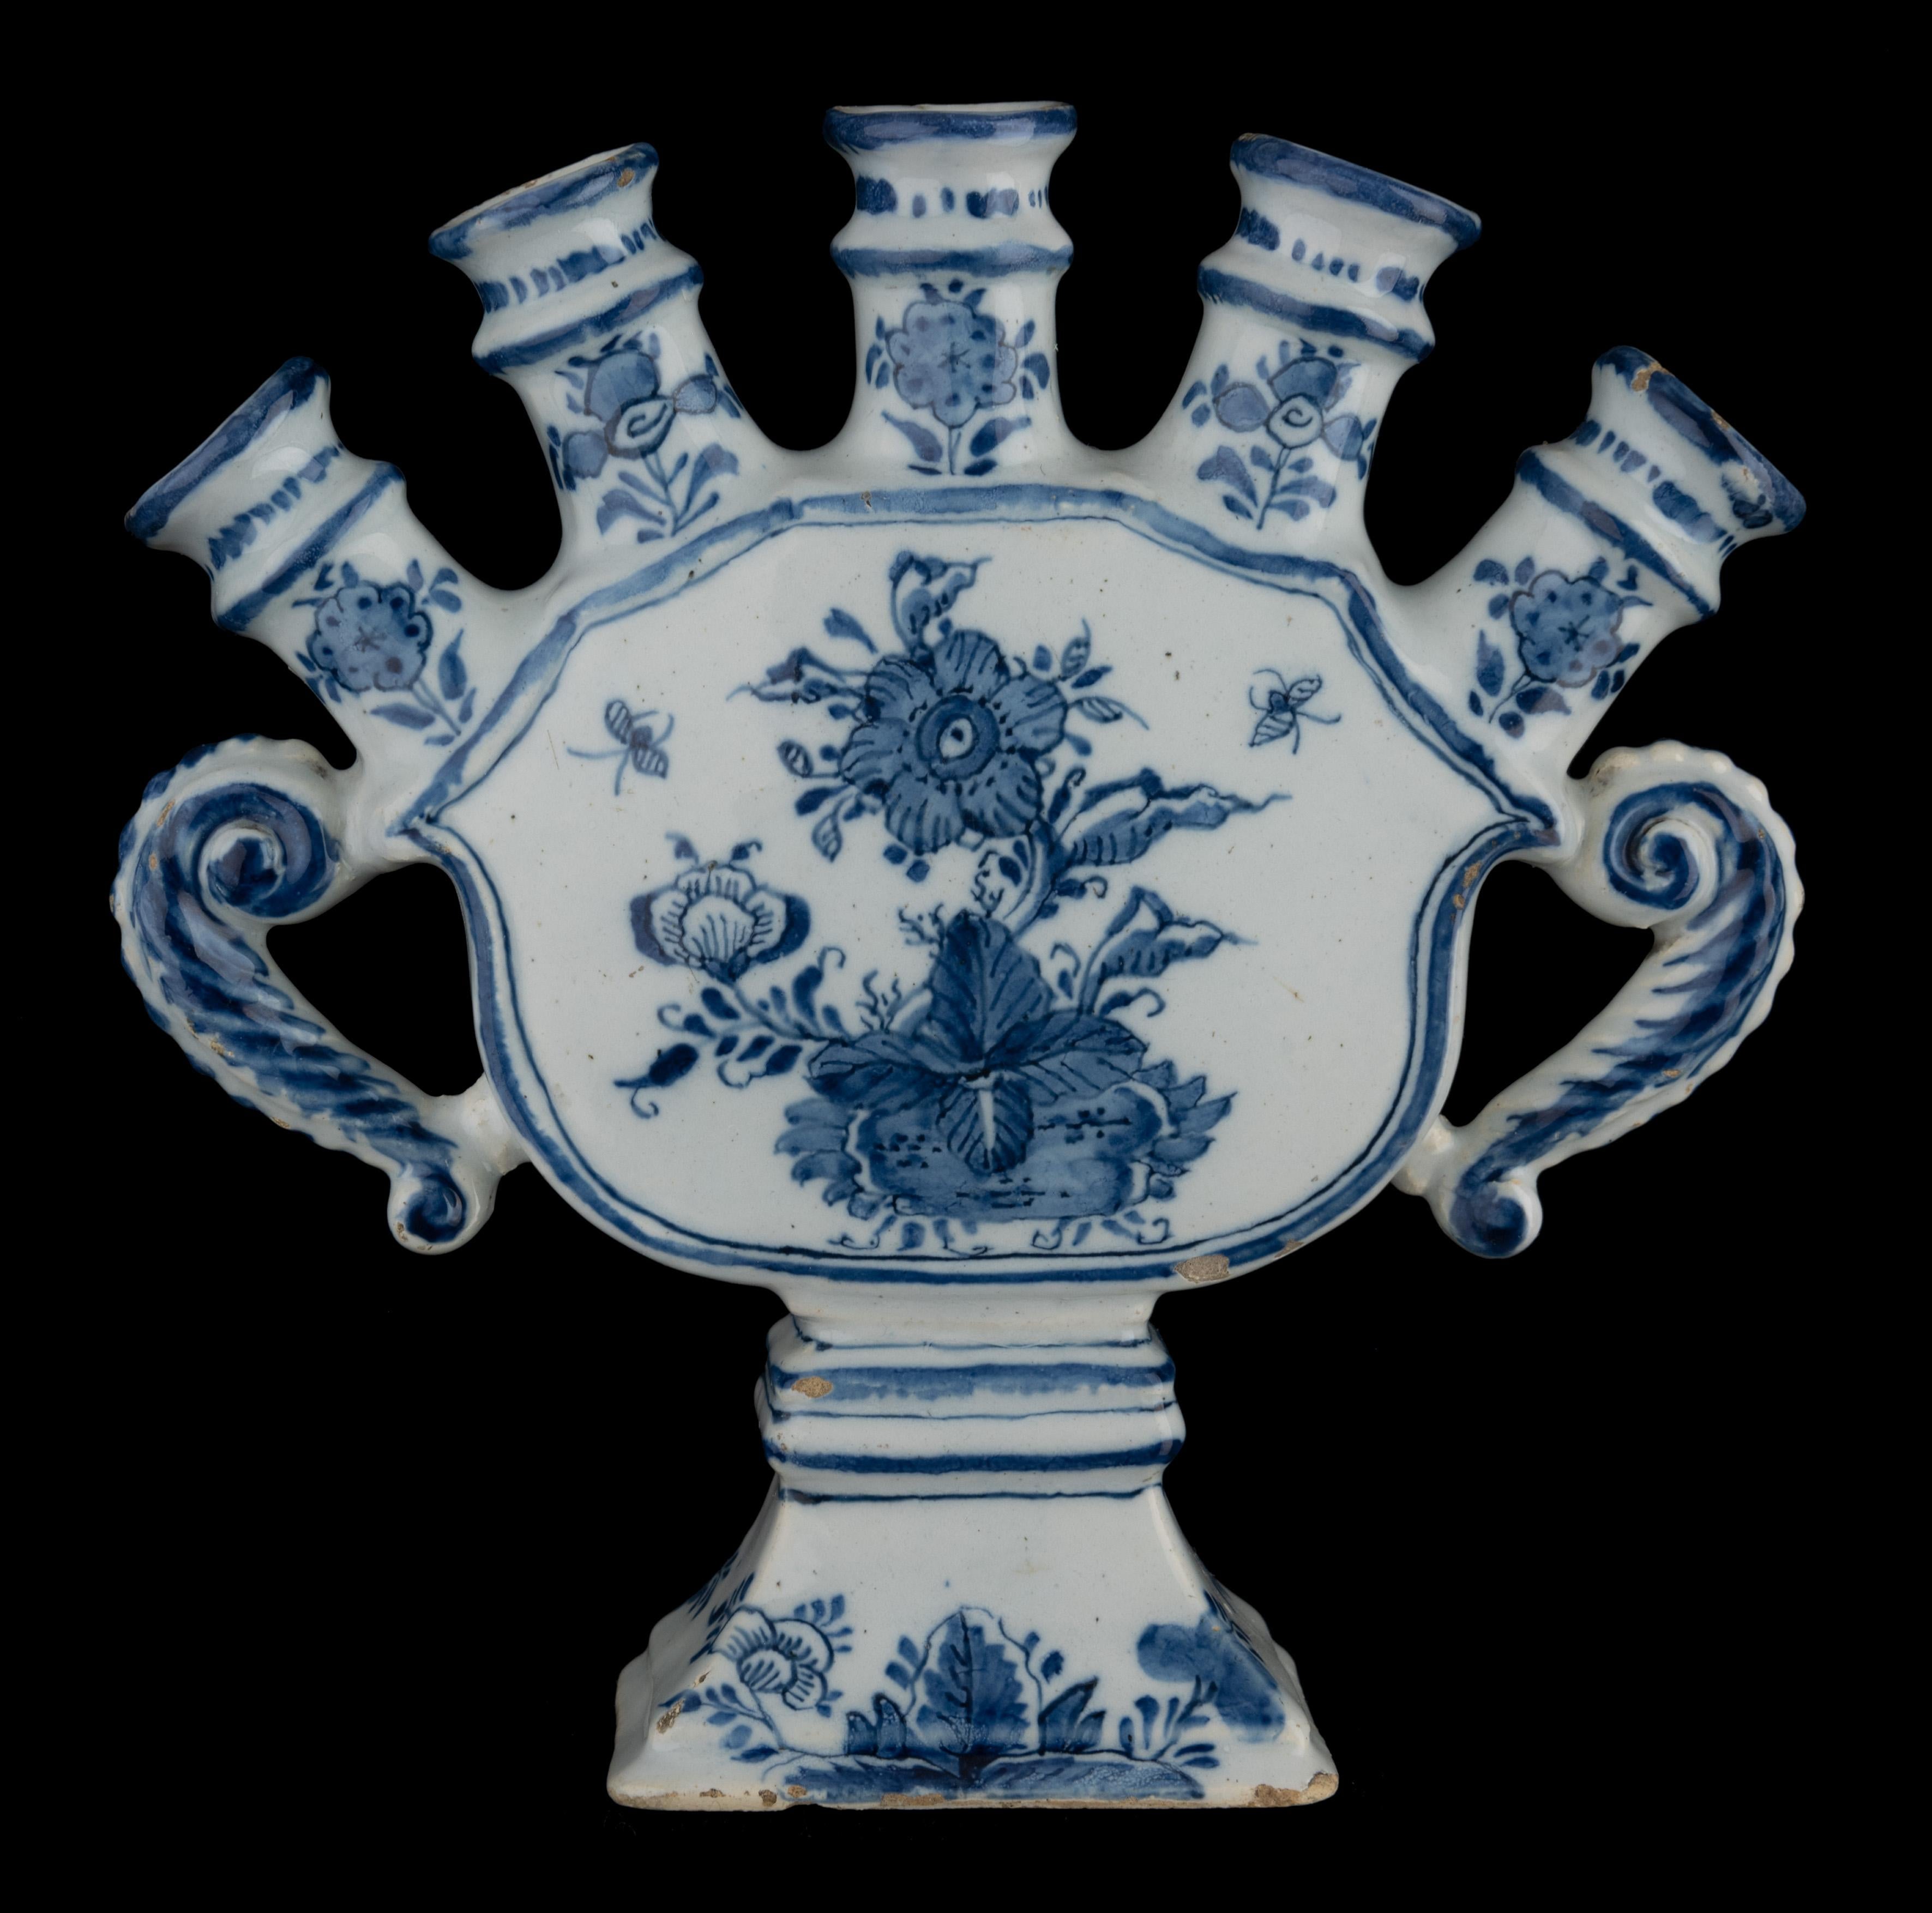 Delft Blau-weiße Blumenvase mit Tüllen Delft, 1720-1730 

Die Blumenvase des Quintel-Modells ist schalenförmig und wird von fünf kurzen, verdickten Hälsen gekrönt, die eine fächerförmige Reihe von Ausgüssen bilden. Die Blumenvase steht auf einem